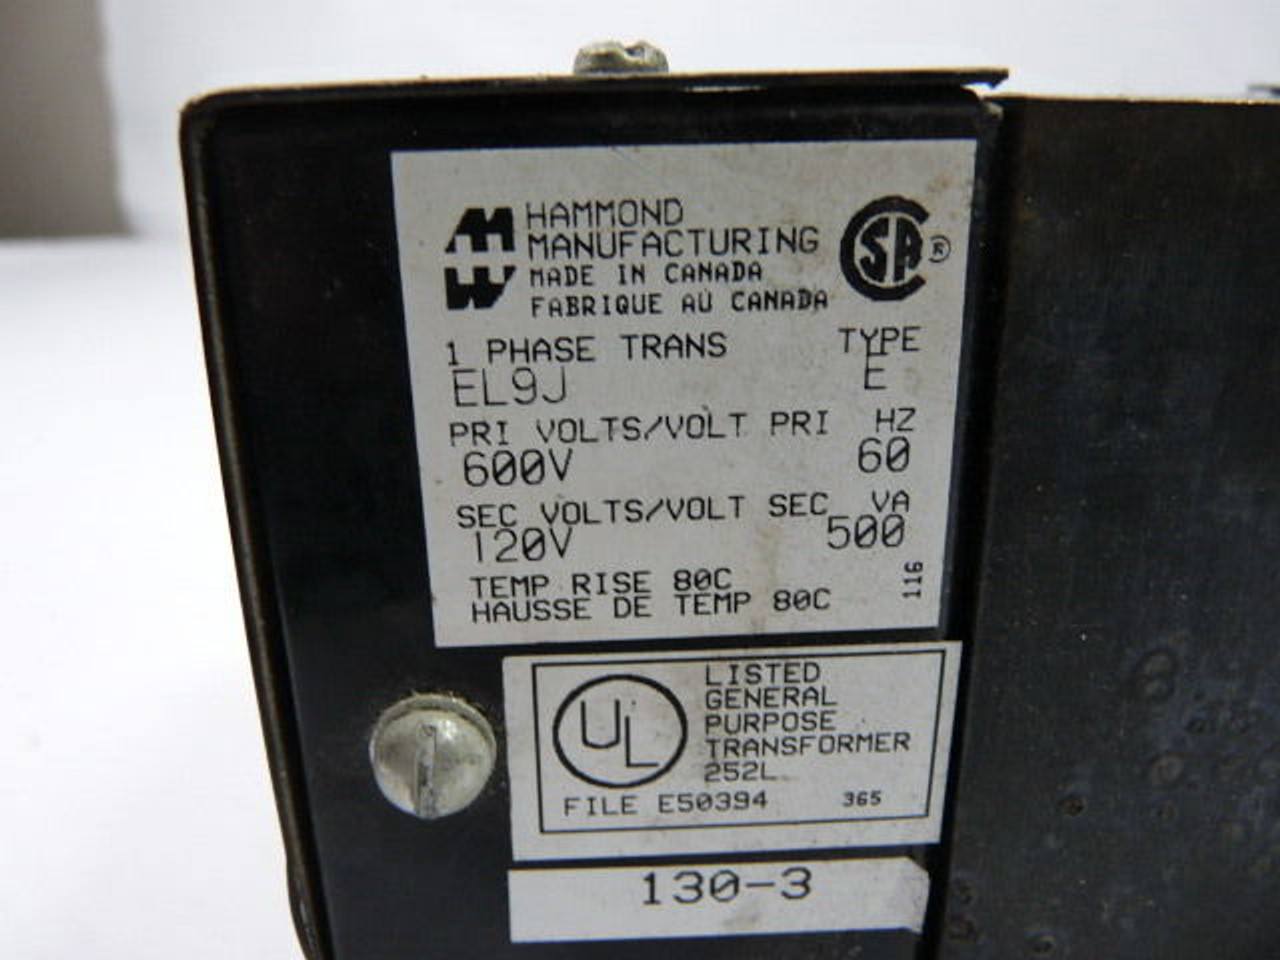 Hammond EL9J Transformer 600/120V 1 PH Type E USED